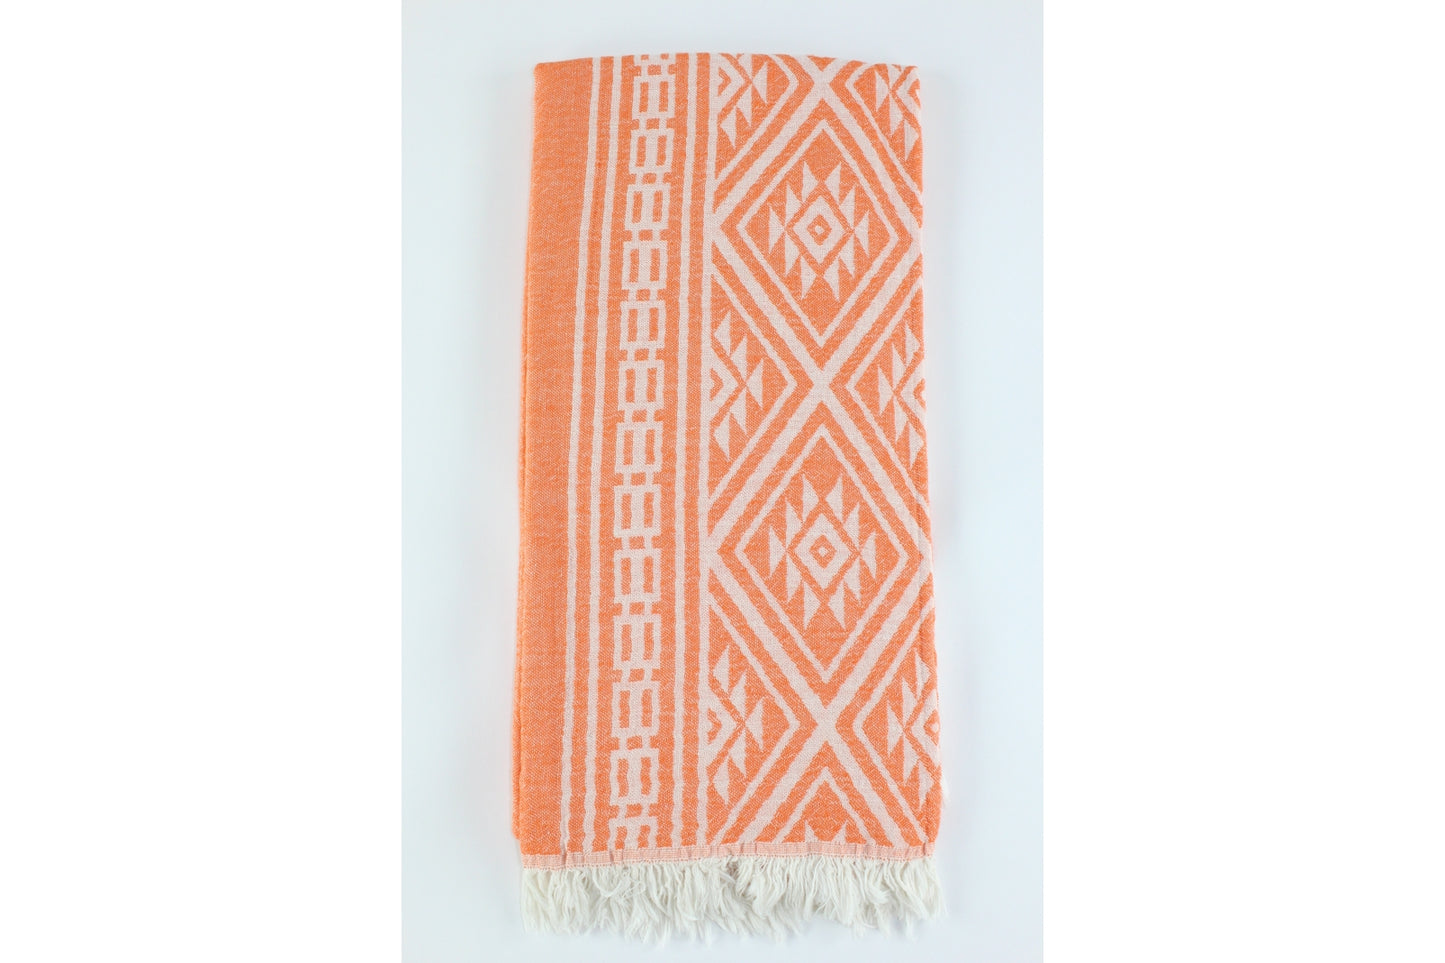 Premium Turkish Double Layer Kilim Towel Peshtemal Fouta (Orange)